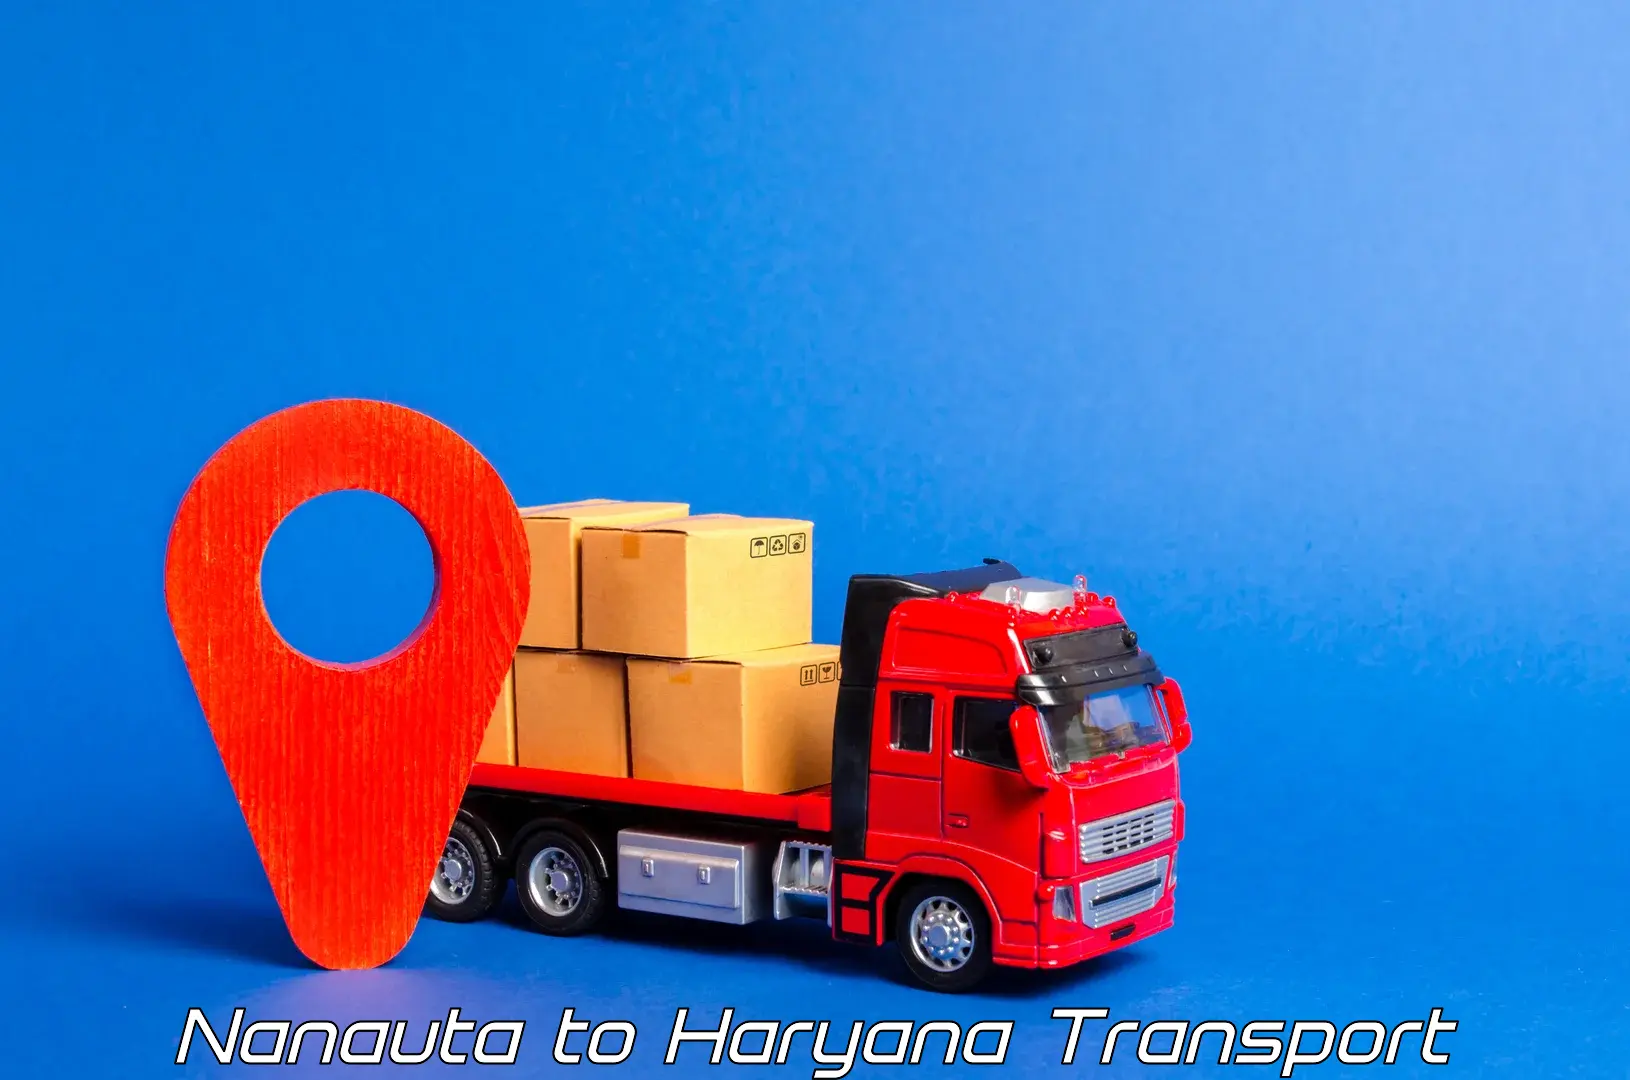 Interstate goods transport Nanauta to Karnal